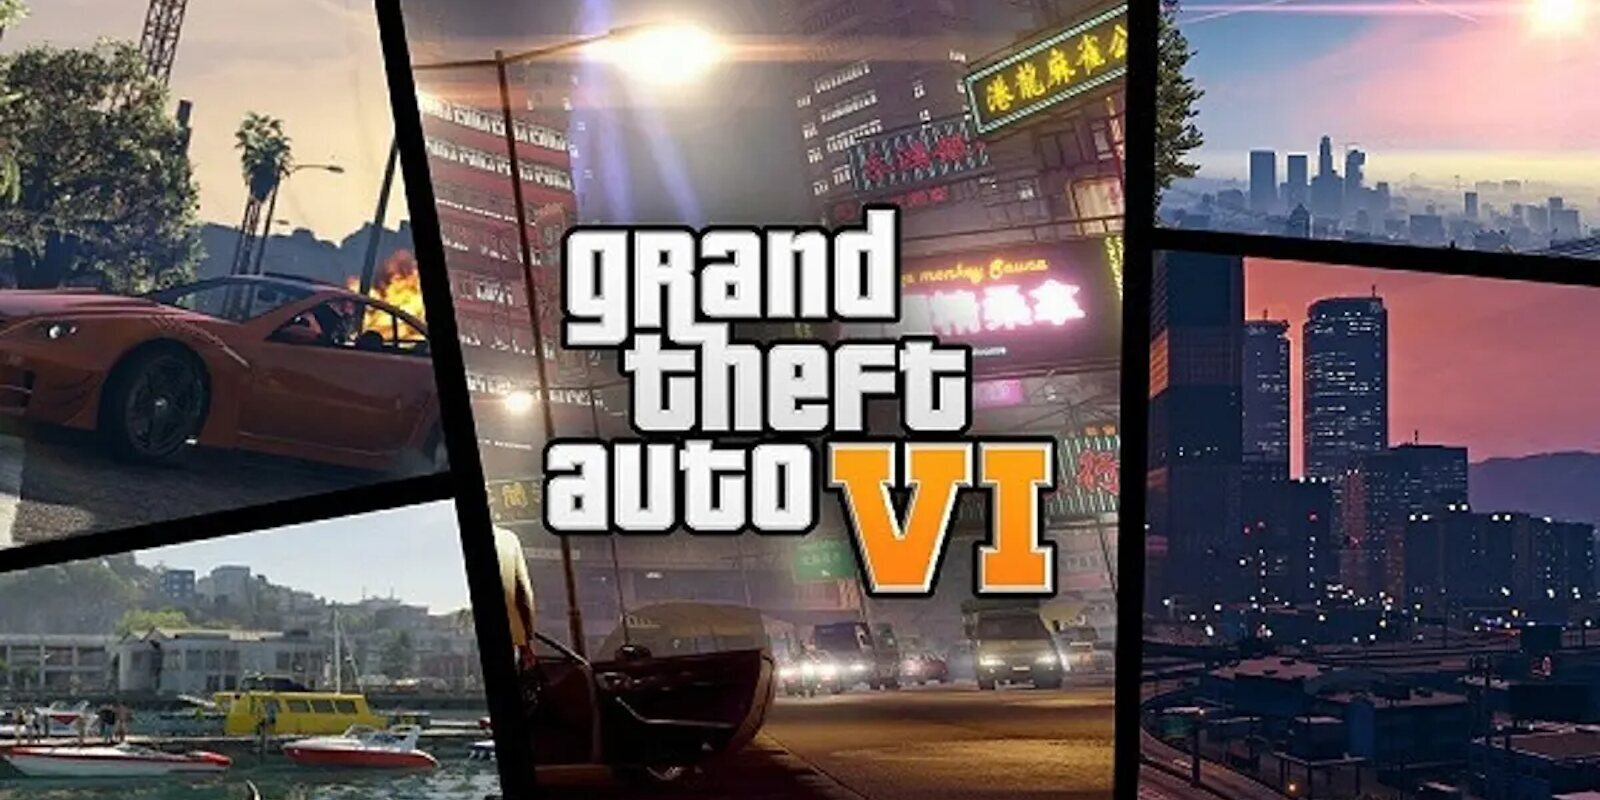 'Grand Theft Auto VI' tendrá un motor gráfico adelantado a su tiempo, asevera un famoso insider